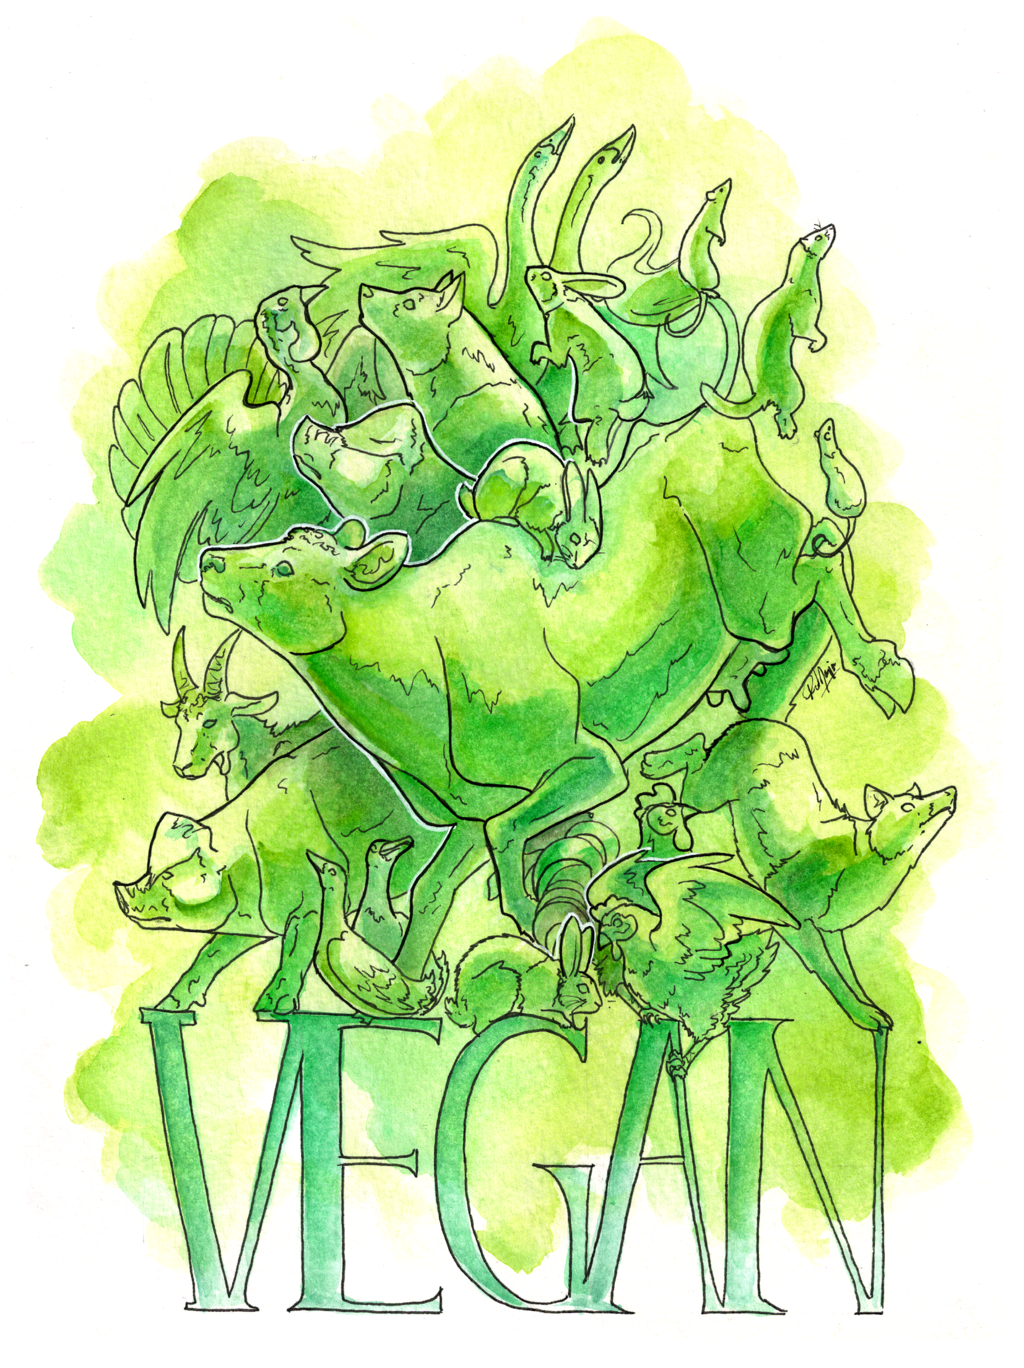 Commission - "Vegan"